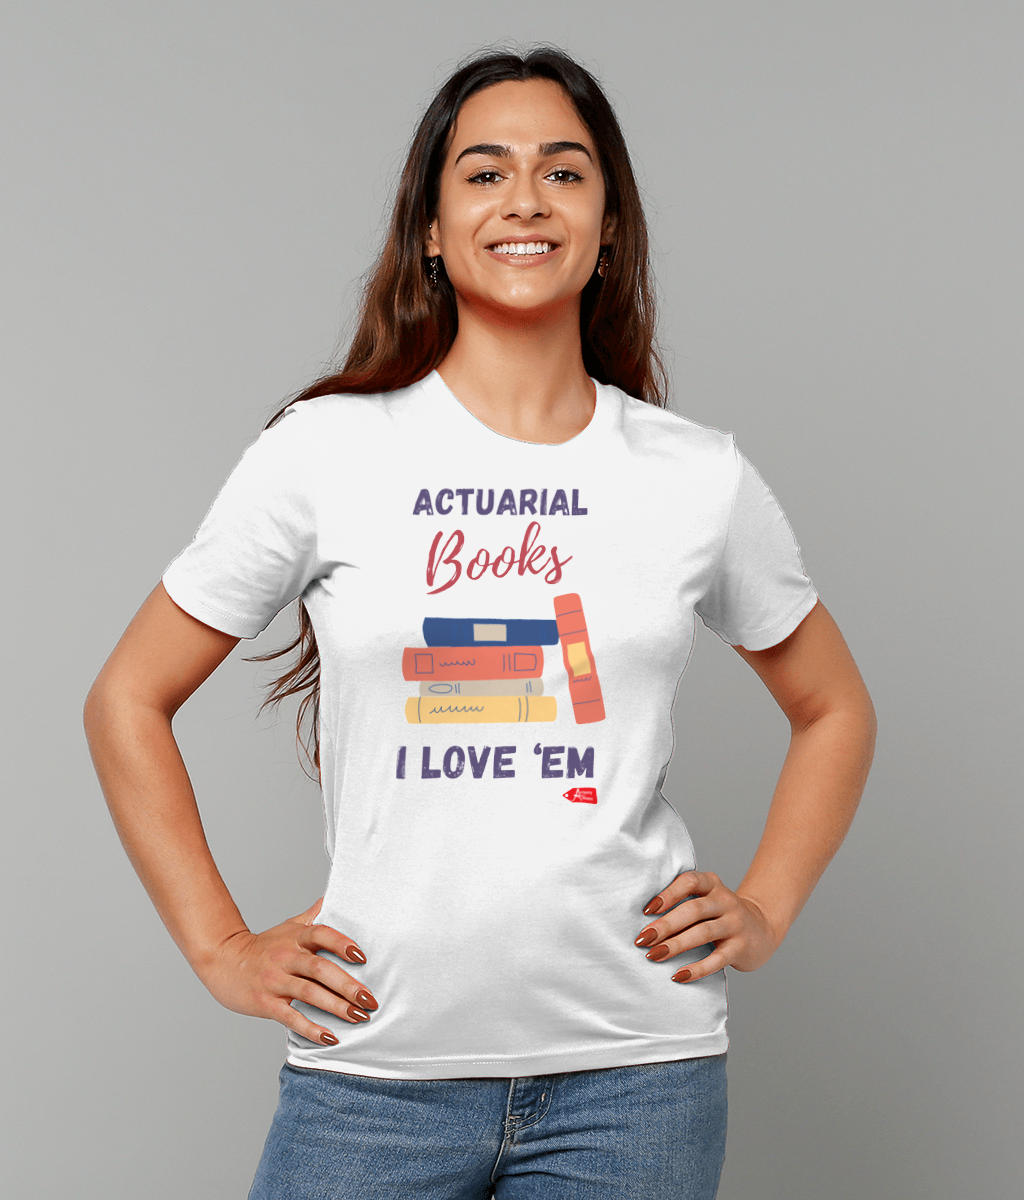 Actuarial Books I Love Em T-Shirt